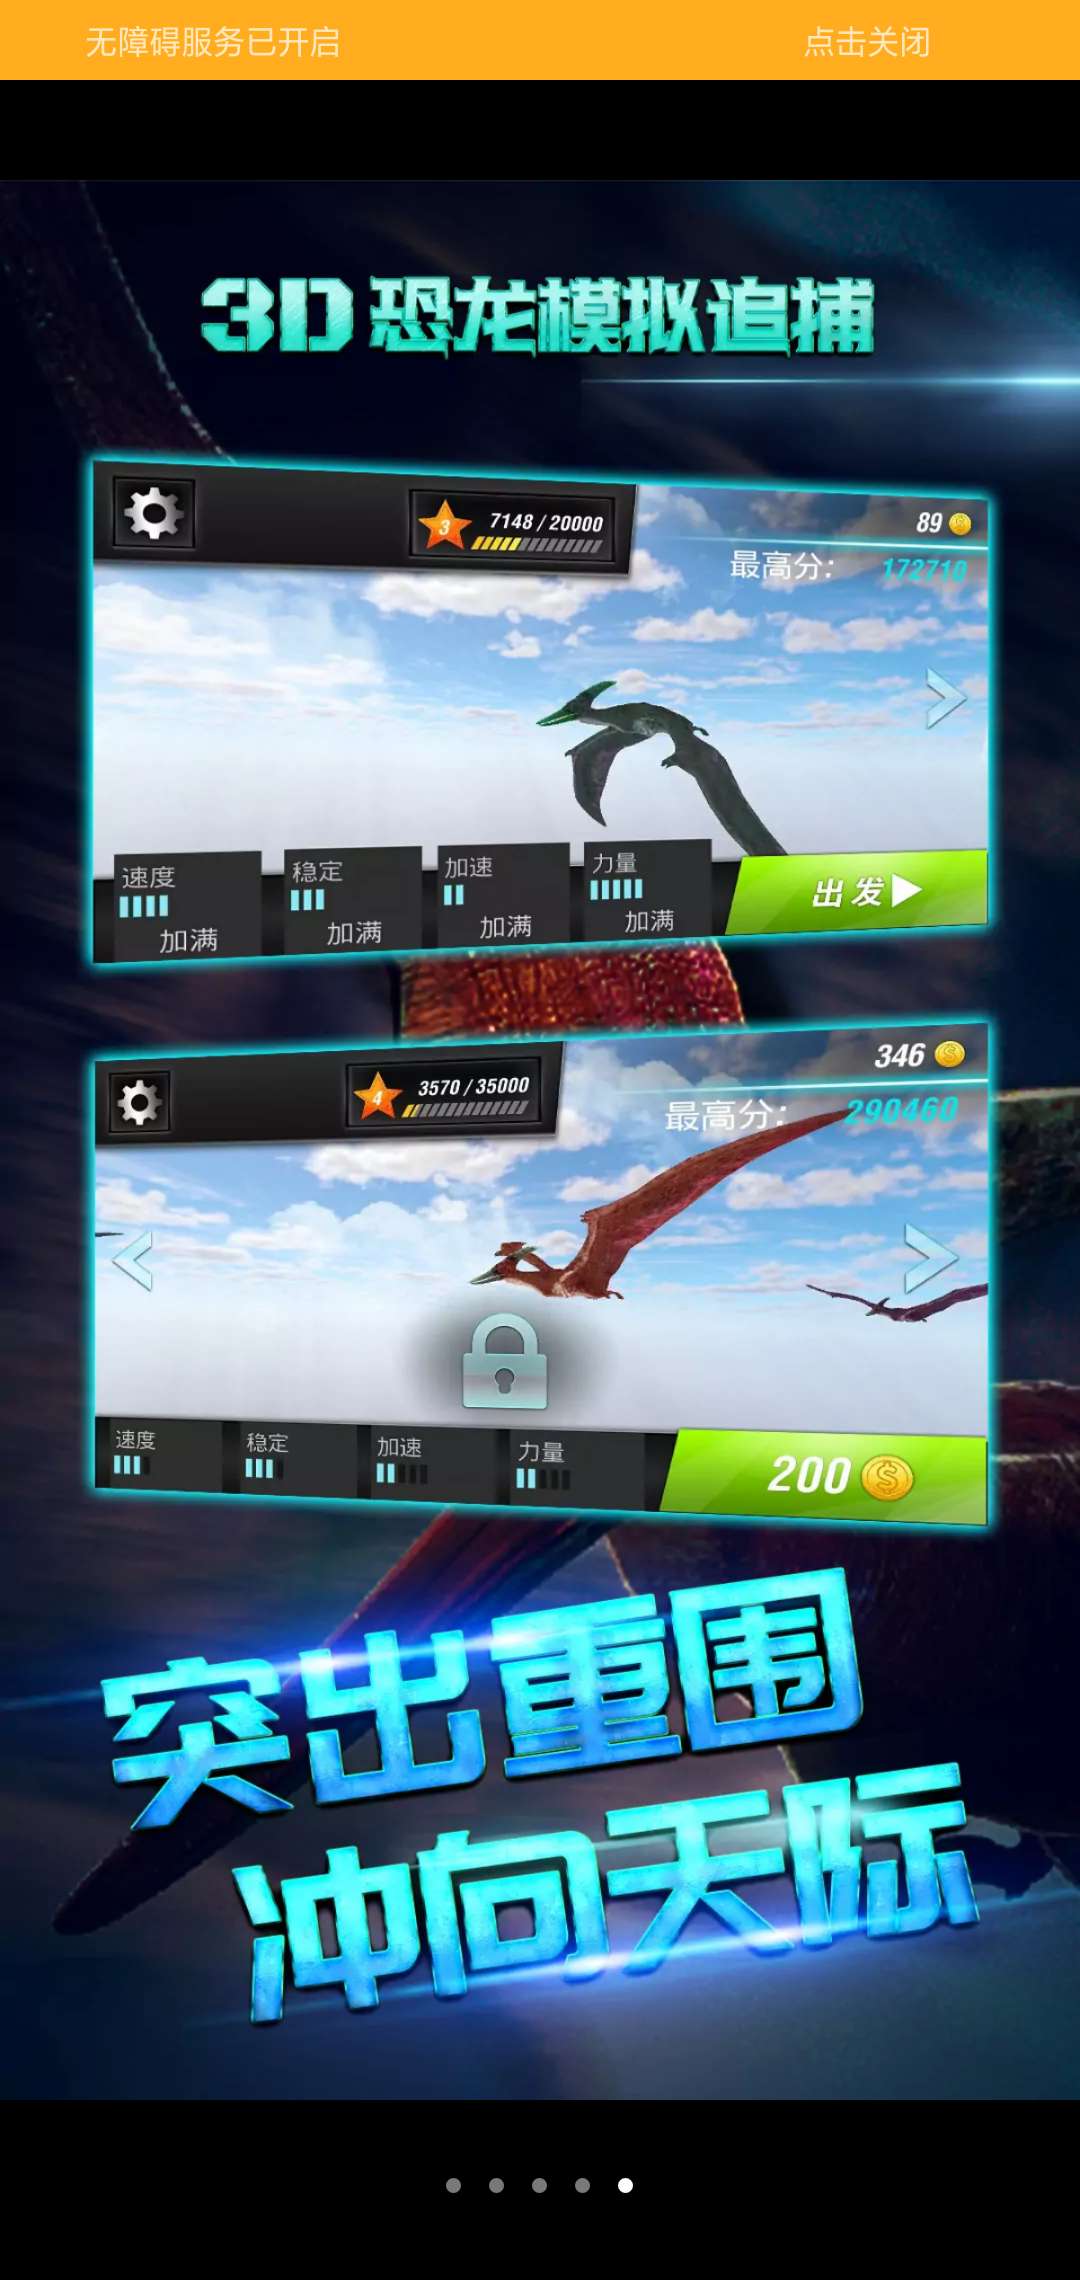 3D恐龙模拟追捕游戏截图4